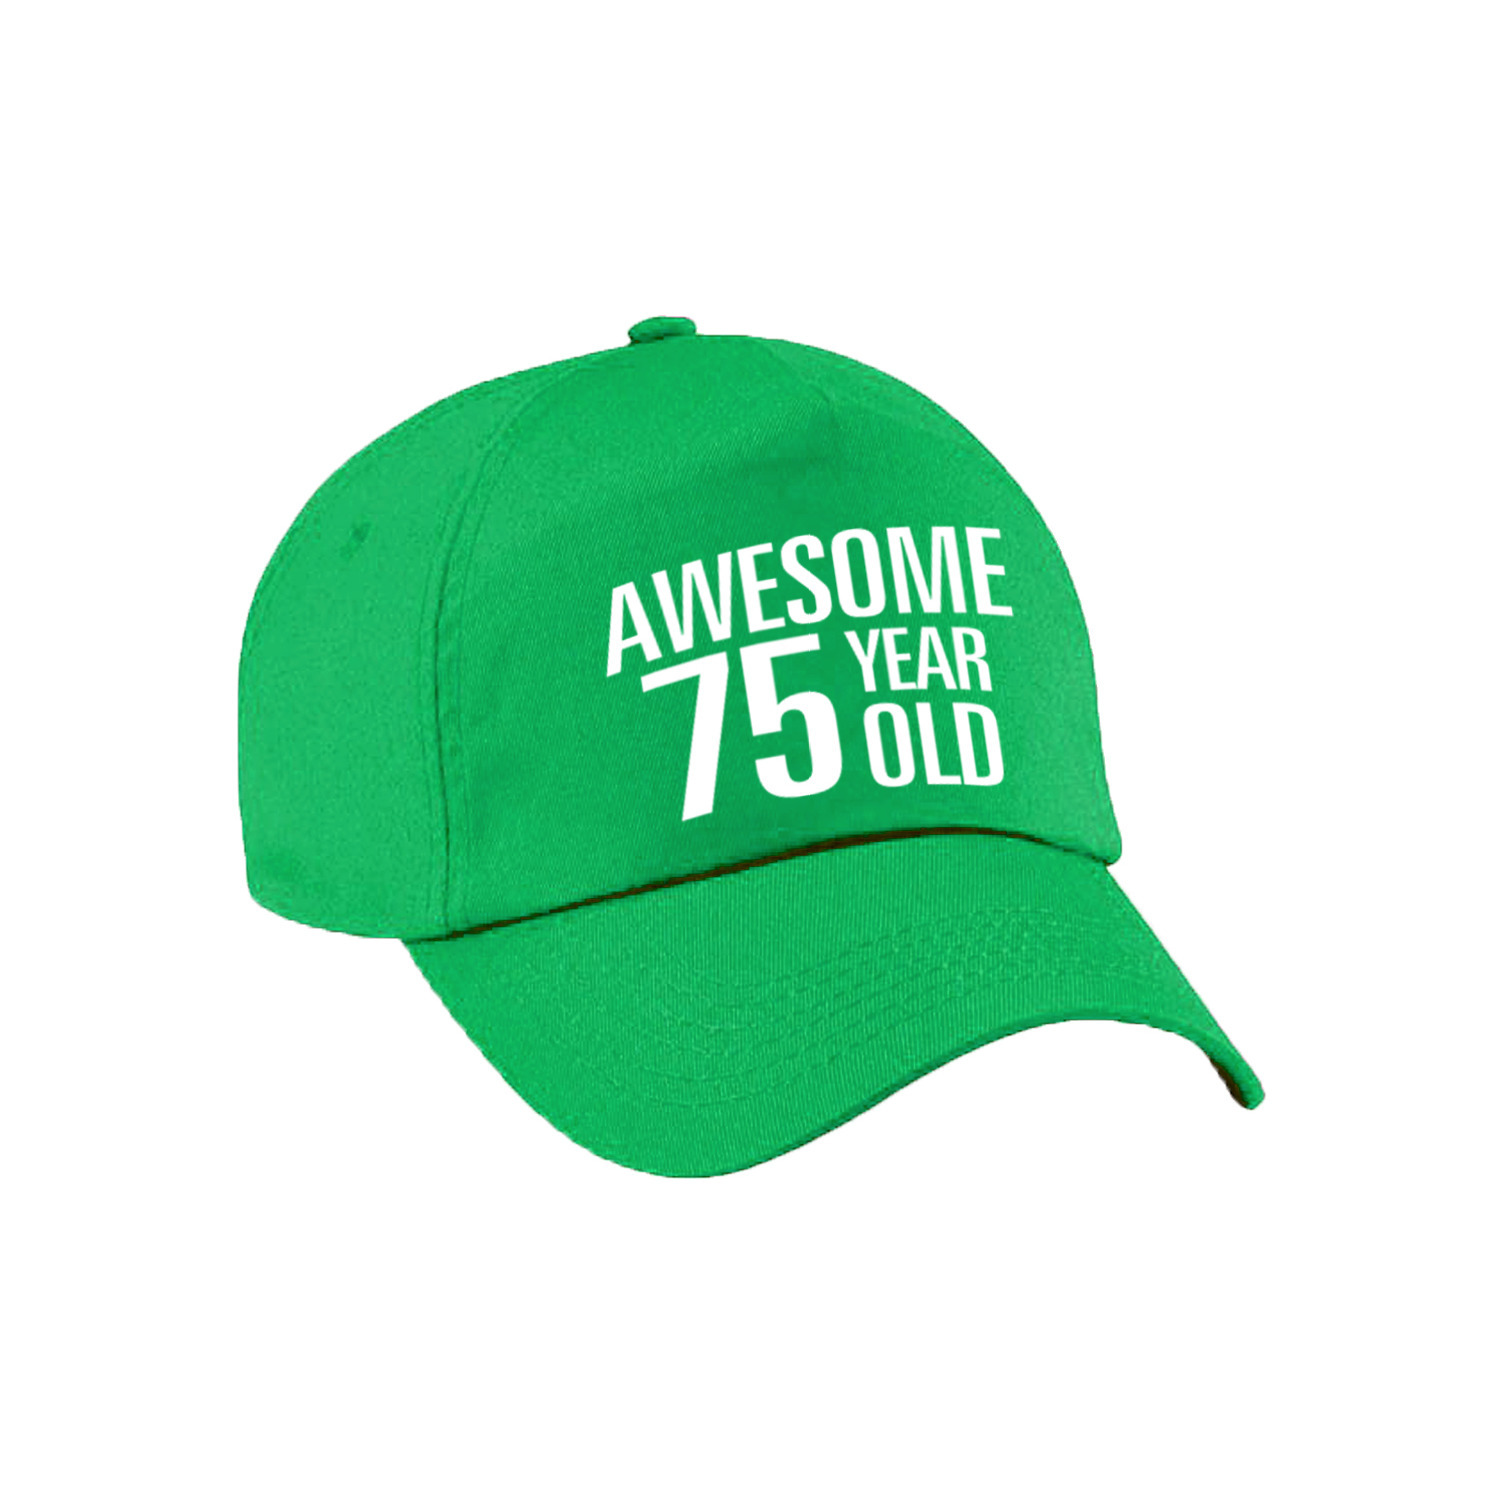 Awesome 75 year old verjaardag pet / cap groen voor dames en heren